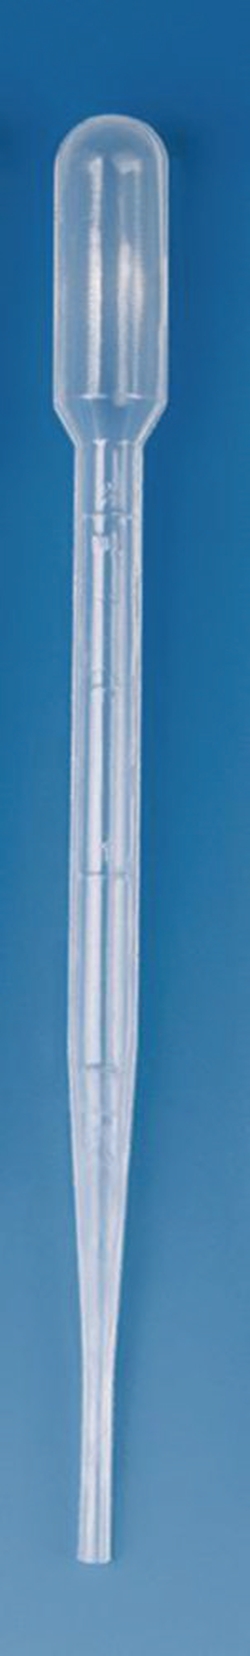 Slika Pasteur pipettes, LDPE